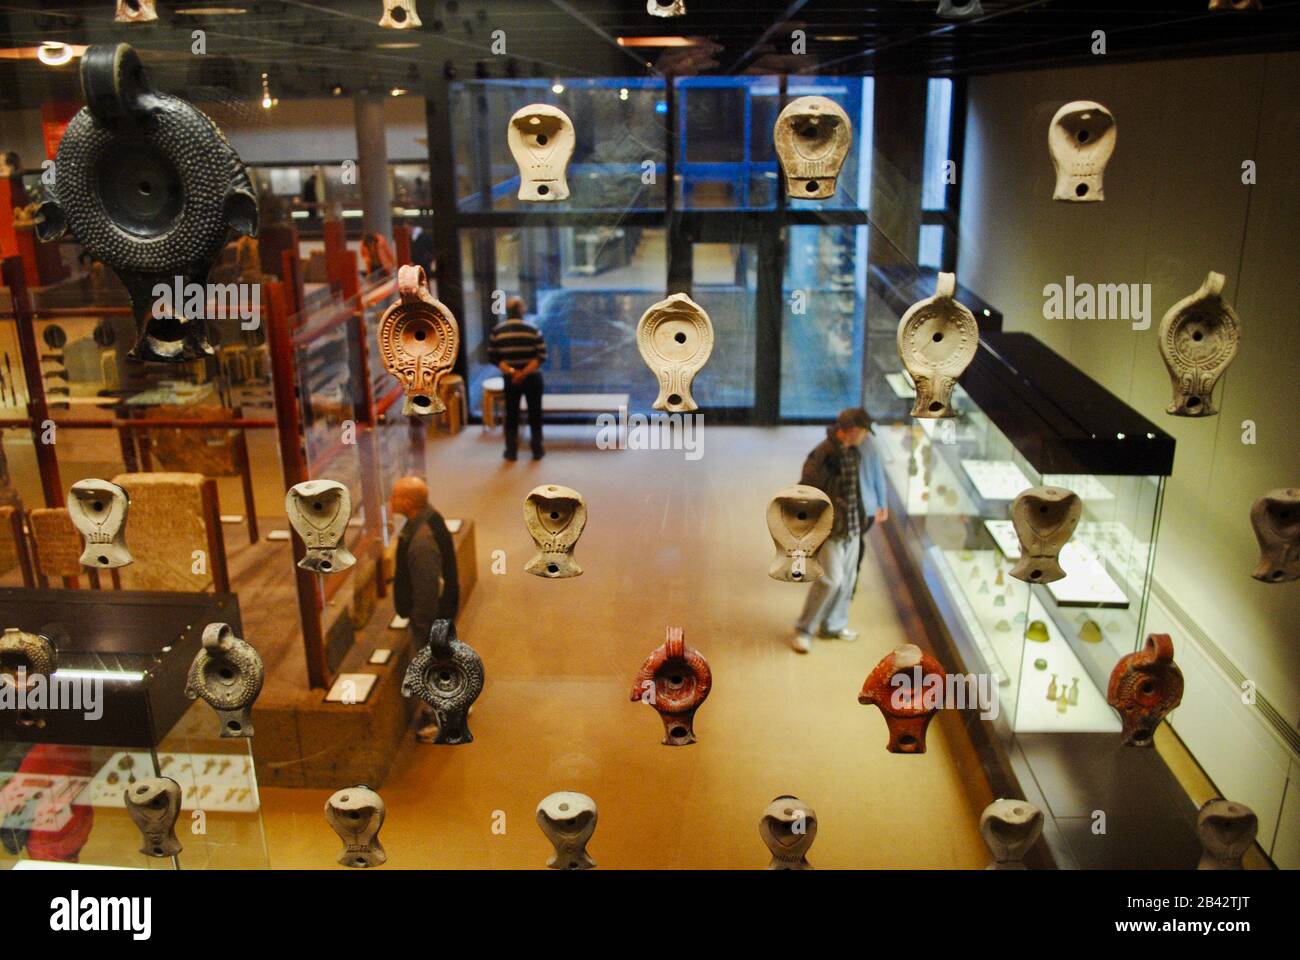 Des lampes en argile exposées au Musée Roman-Germanique (RGM, Römisch-Germanisches Museum) est un musée archéologique de Cologne (Köln), Allemagne. Banque D'Images